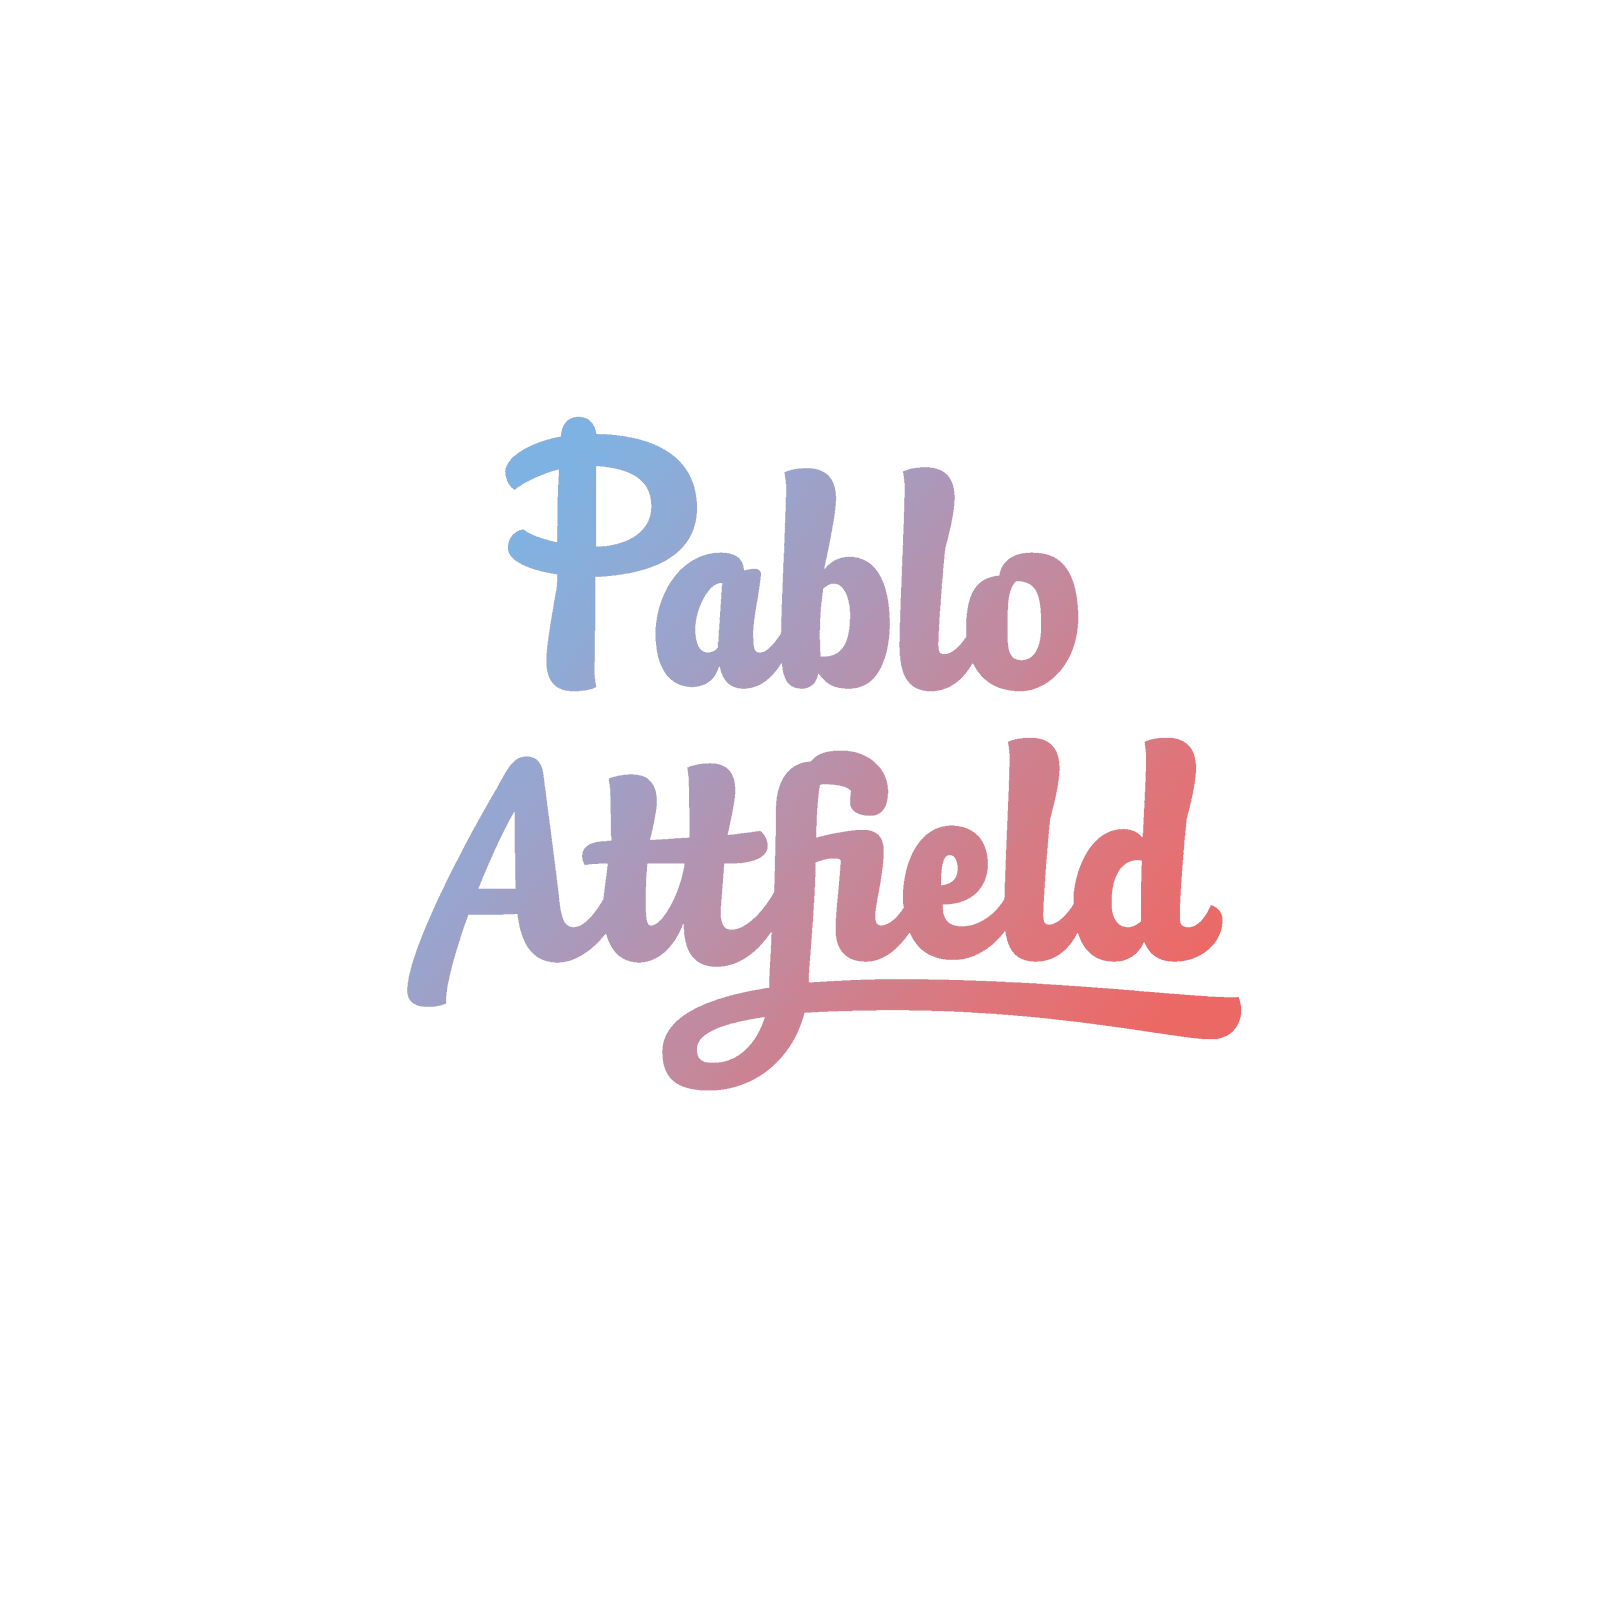 PabloAttfield